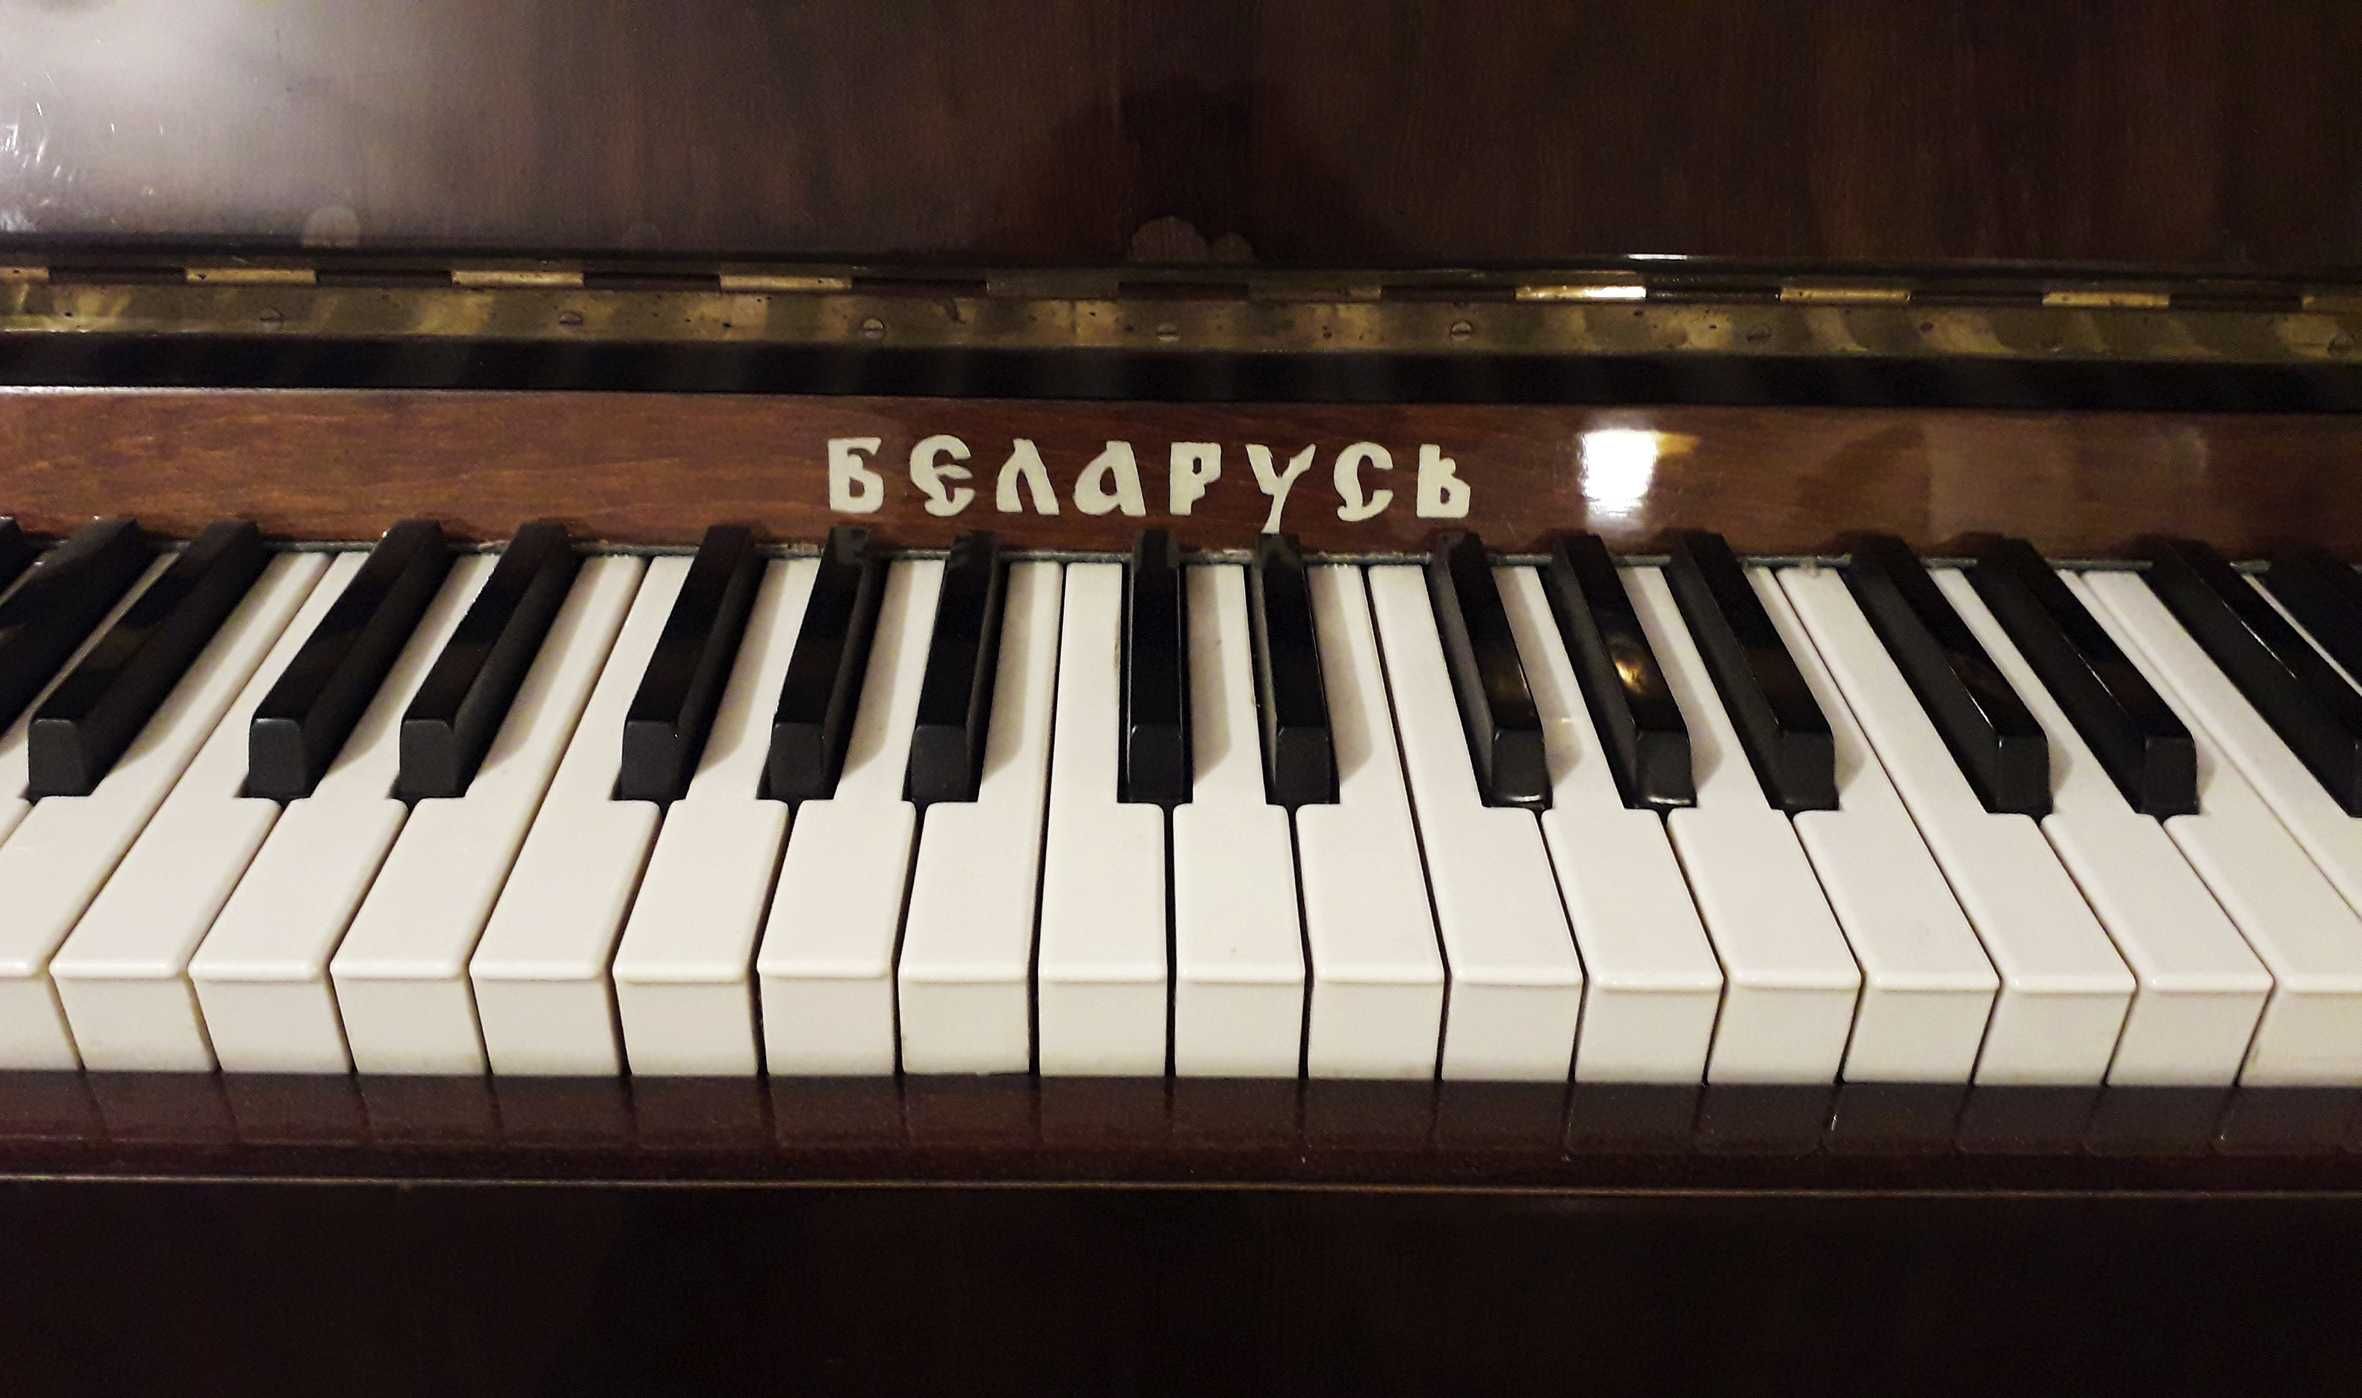 Продается фортепиано Беларусь